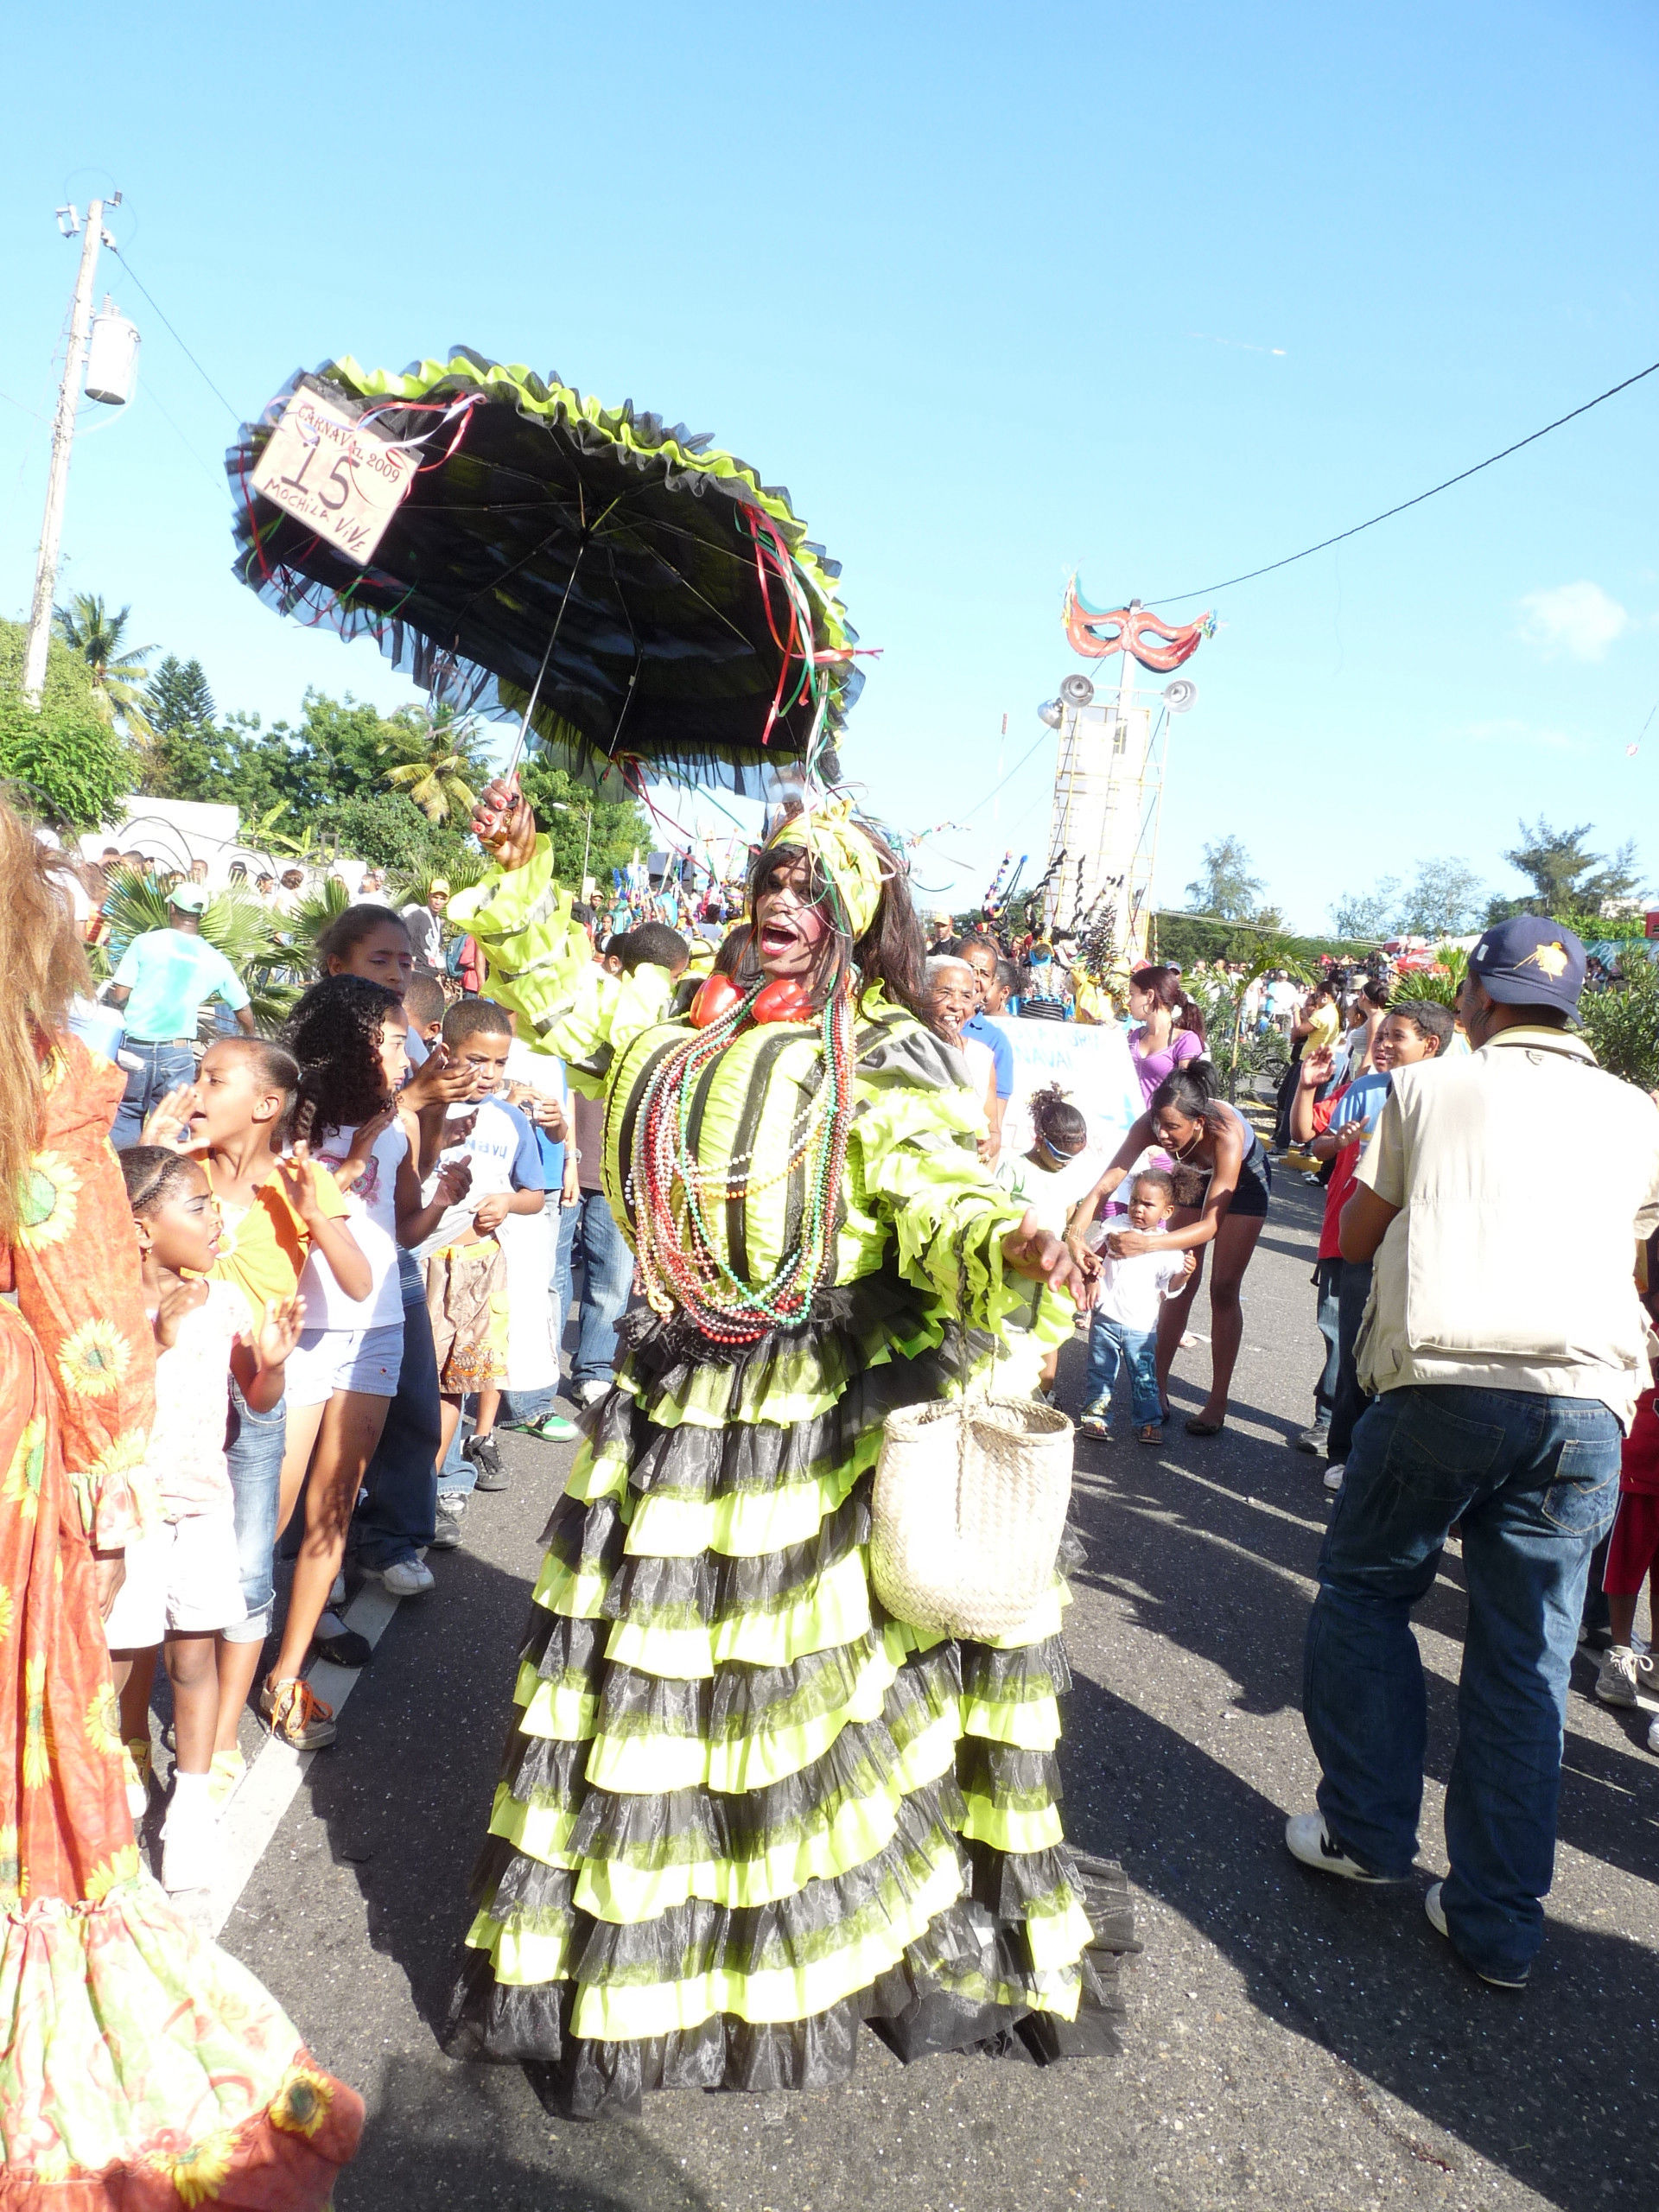 Carnaval 2009 Santiago de los Caballeros, Republica Dominicana 